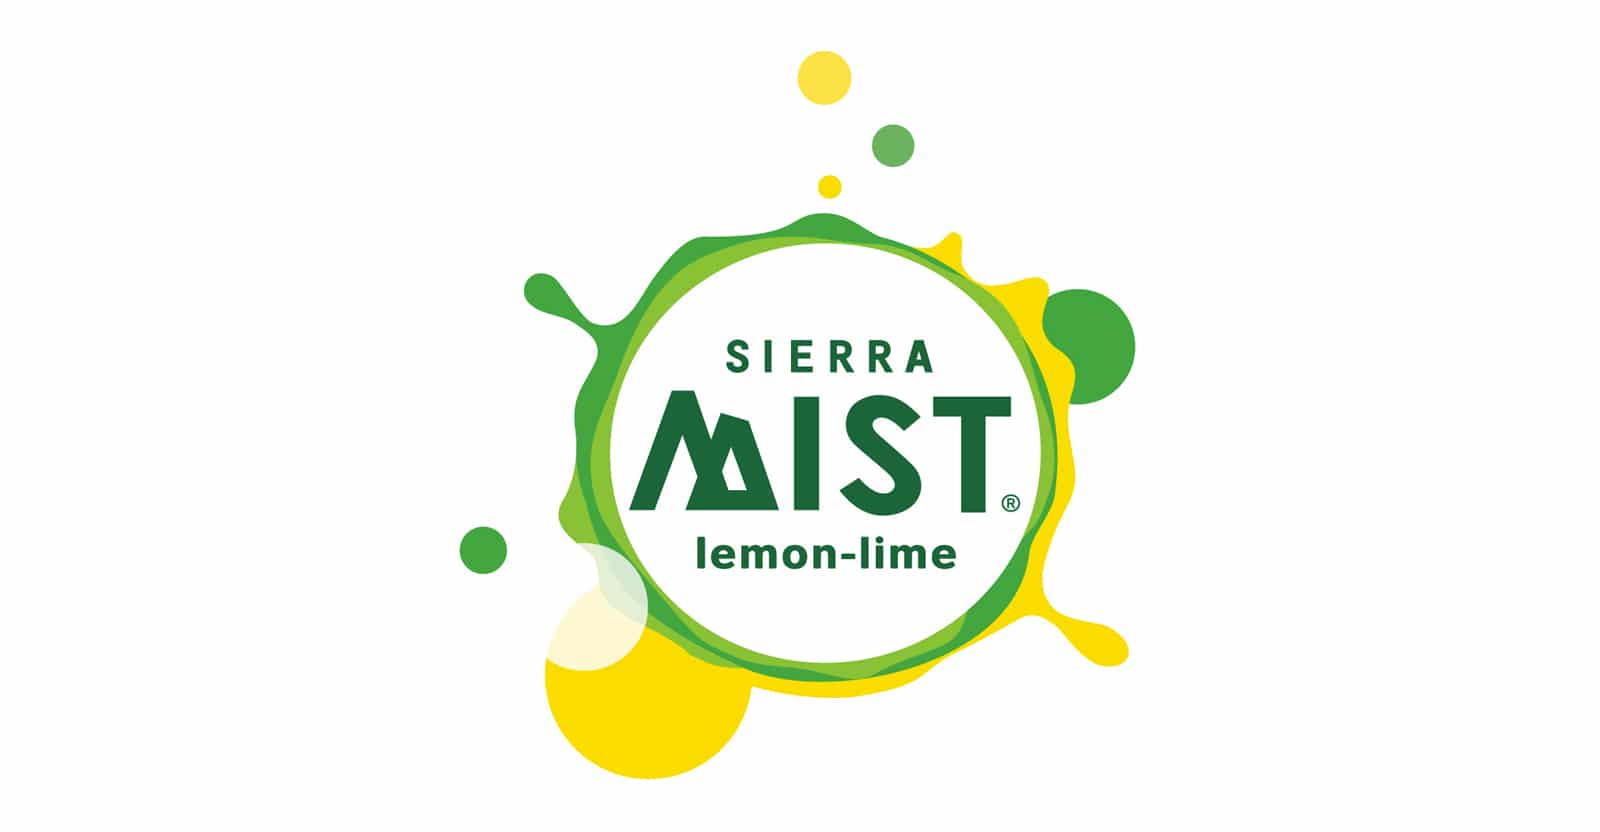 is sierra mist gluten-free